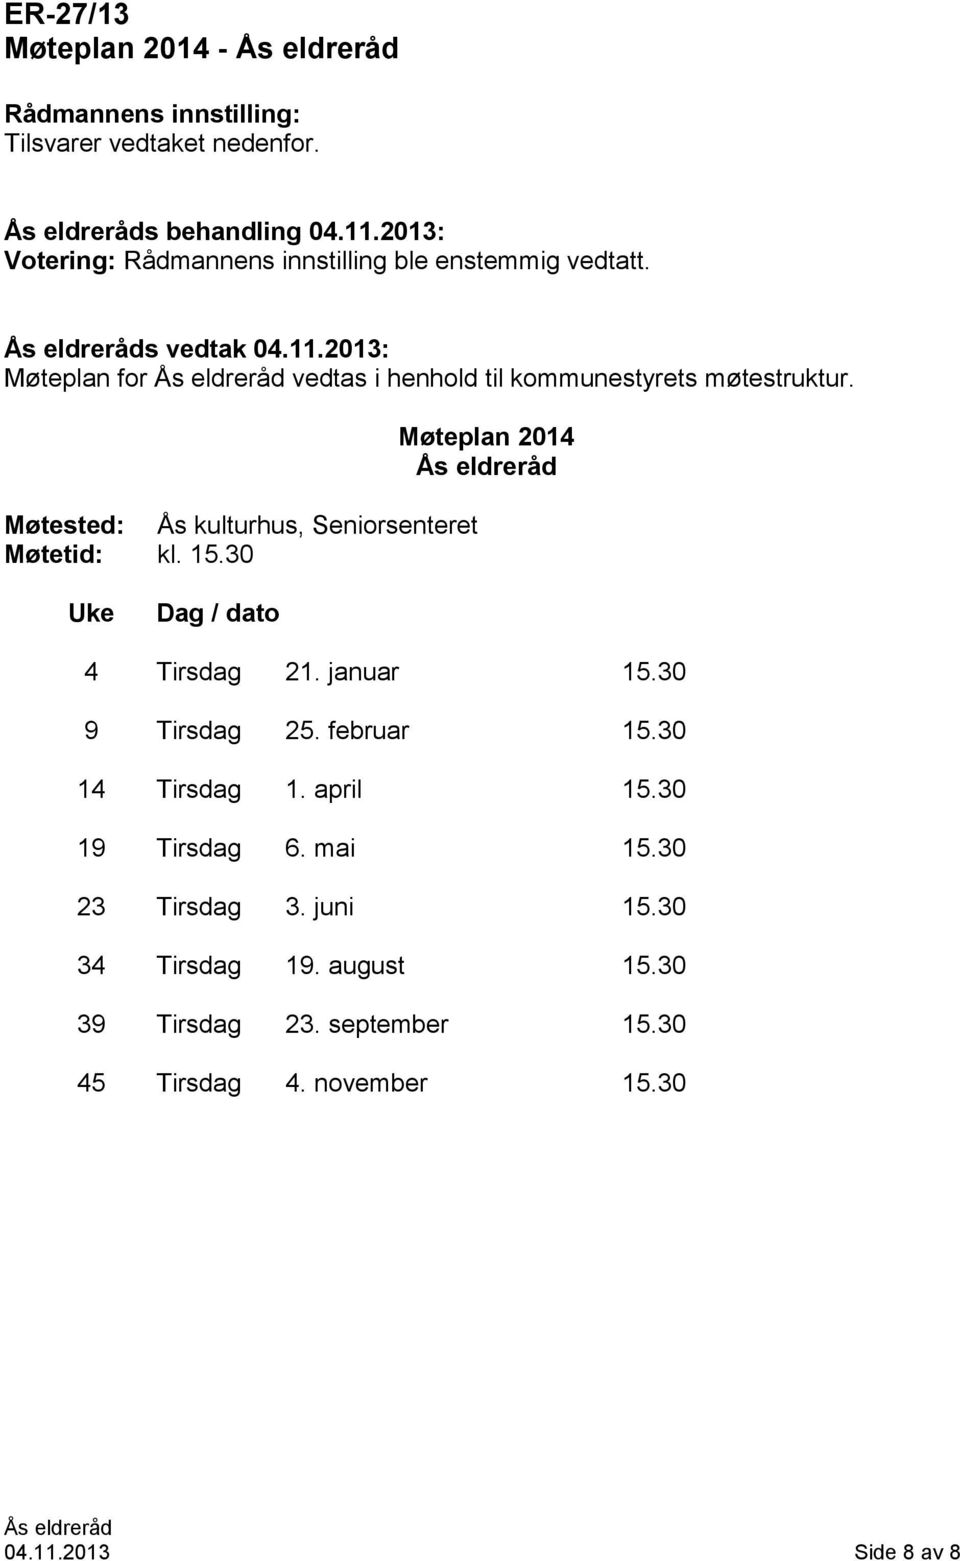 2013: Møteplan for vedtas i henhold til kommunestyrets møtestruktur. Møtested: Ås kulturhus, Seniorsenteret Møtetid: kl. 15.